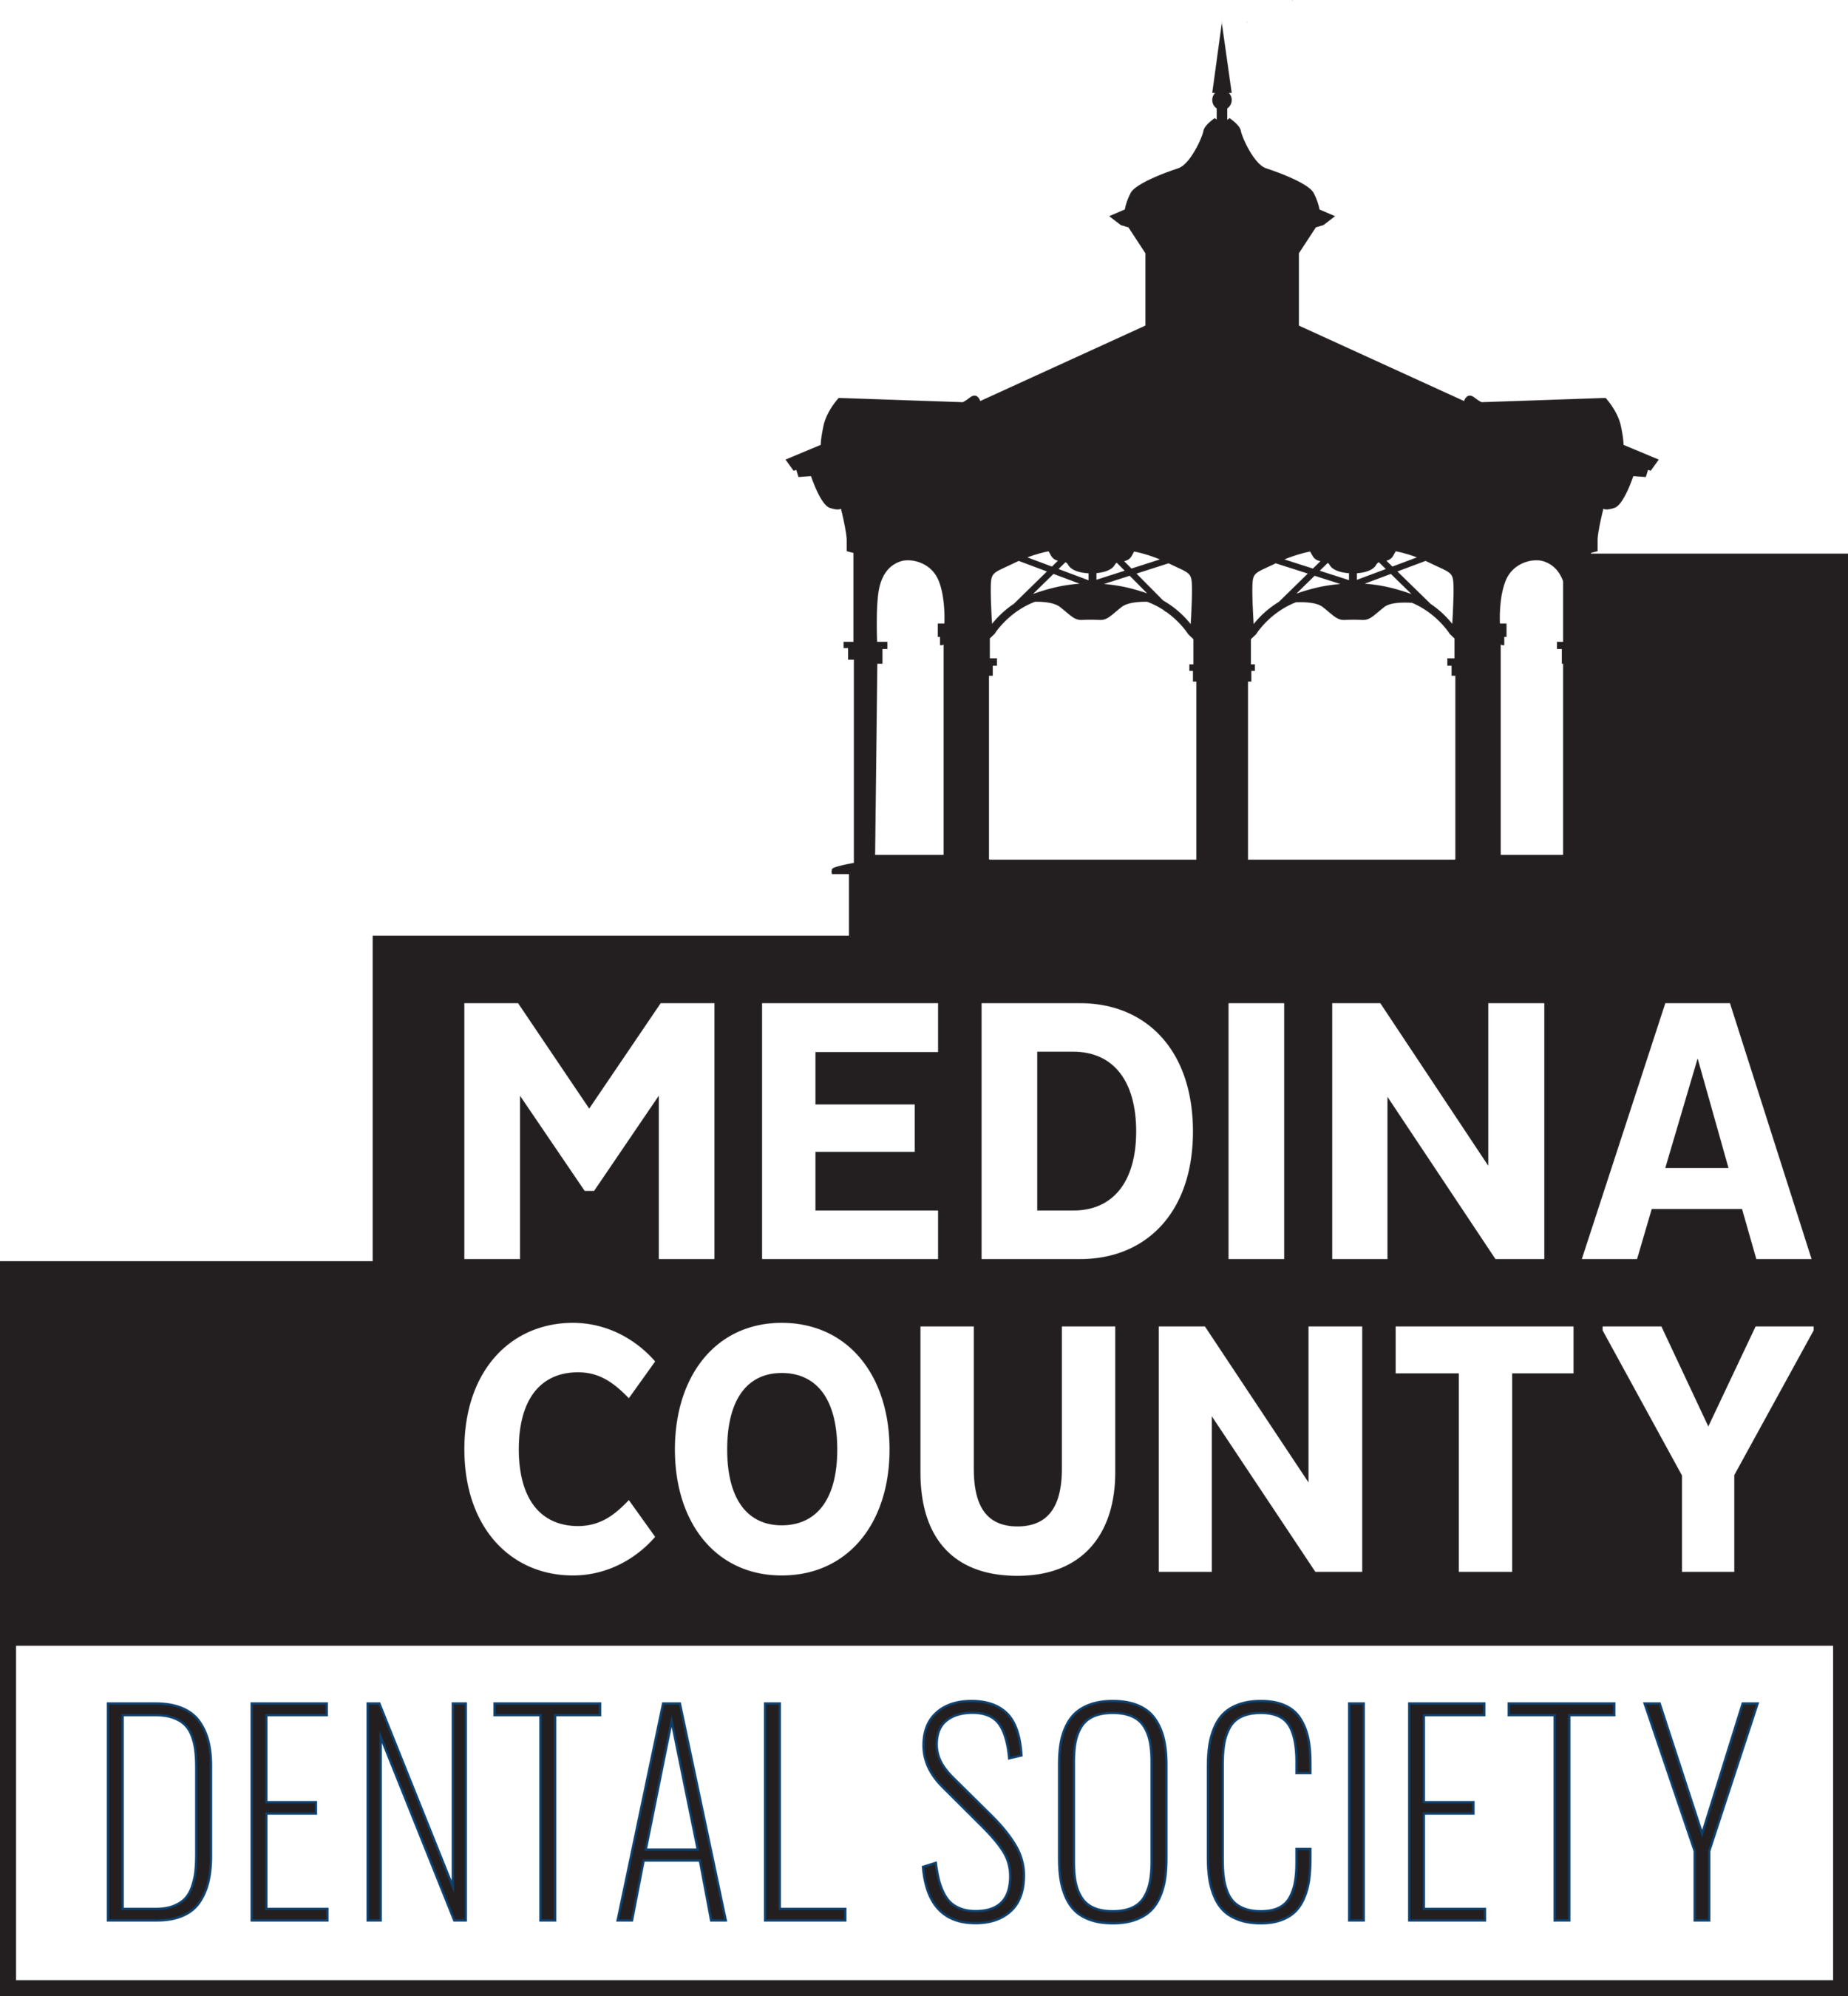 Medina County Dental Society